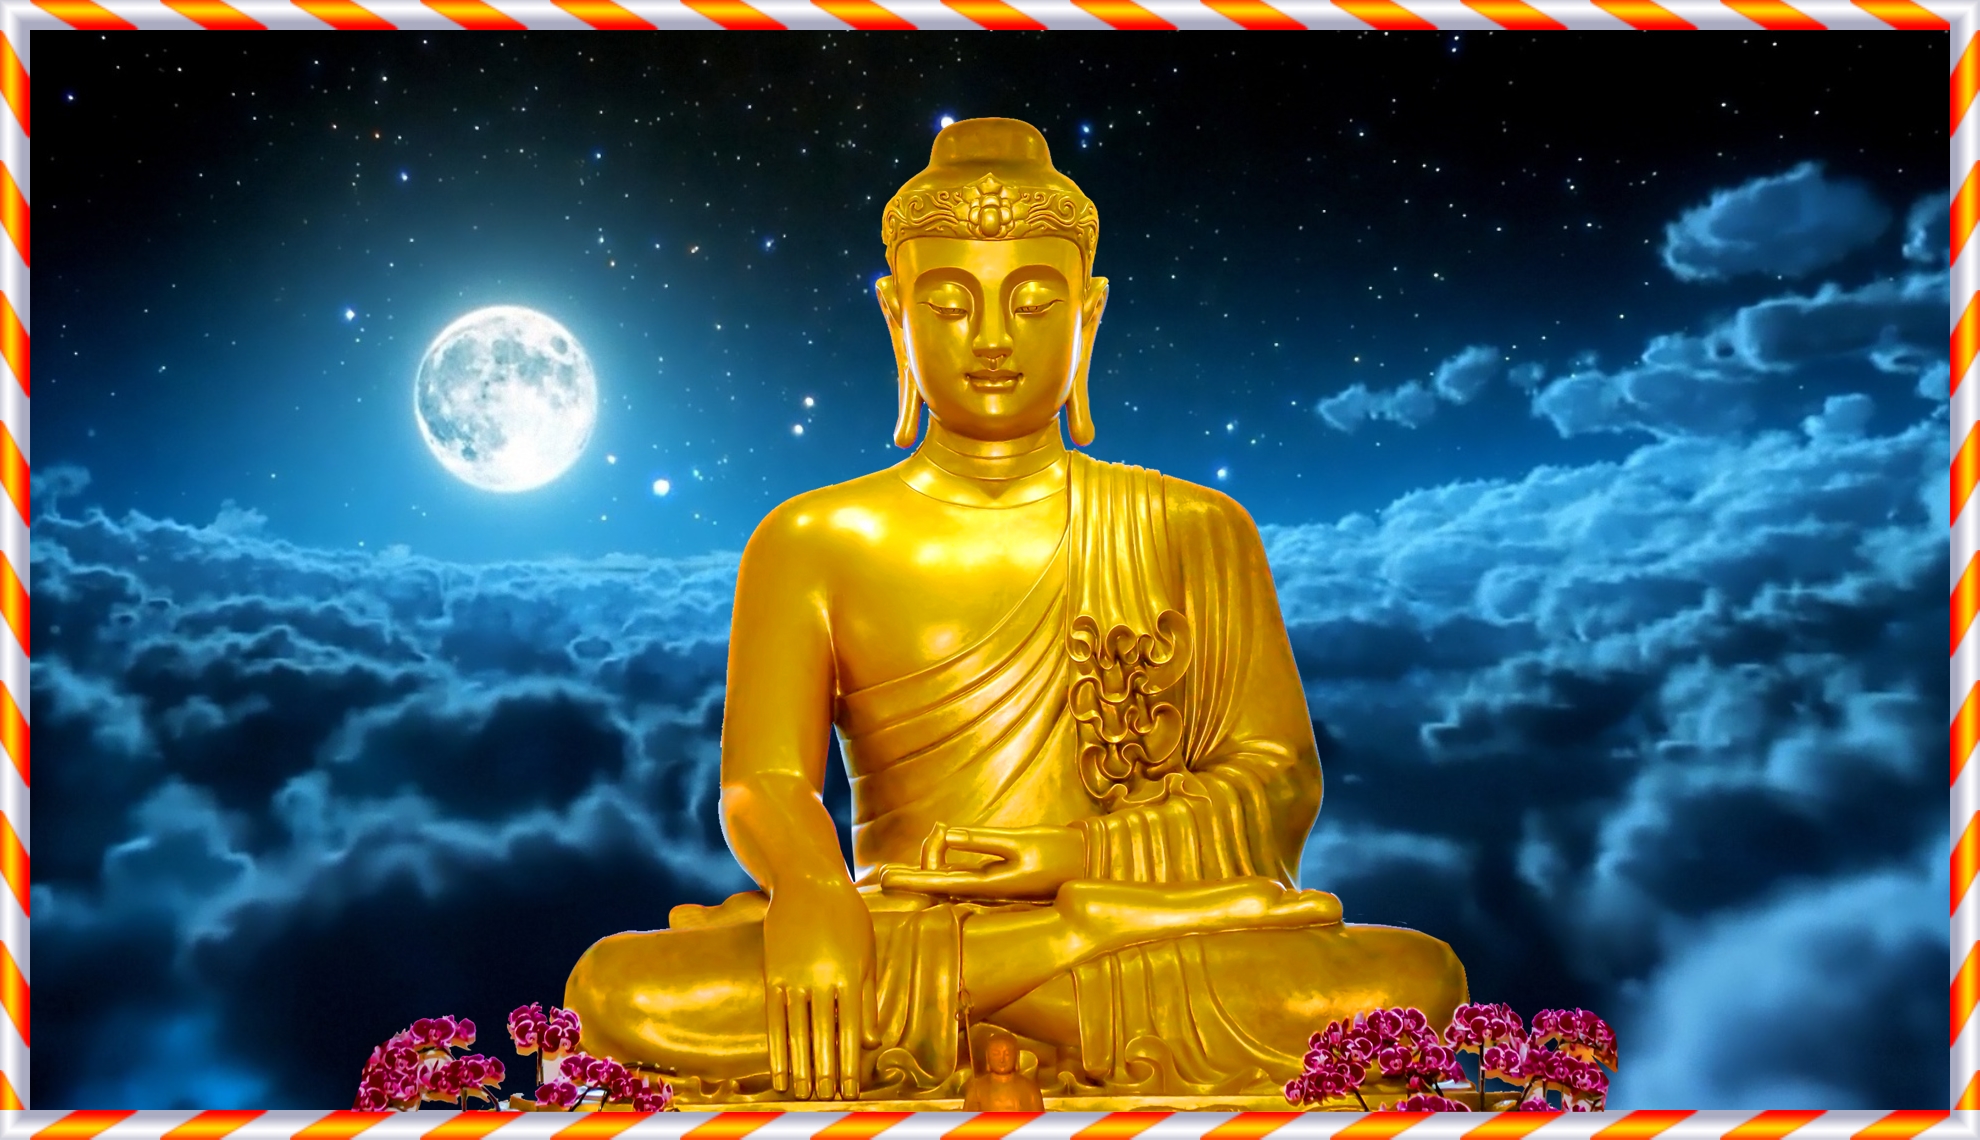 Hình Phật Thích Ca đẹp kèm khung tranh | Lazada.vn